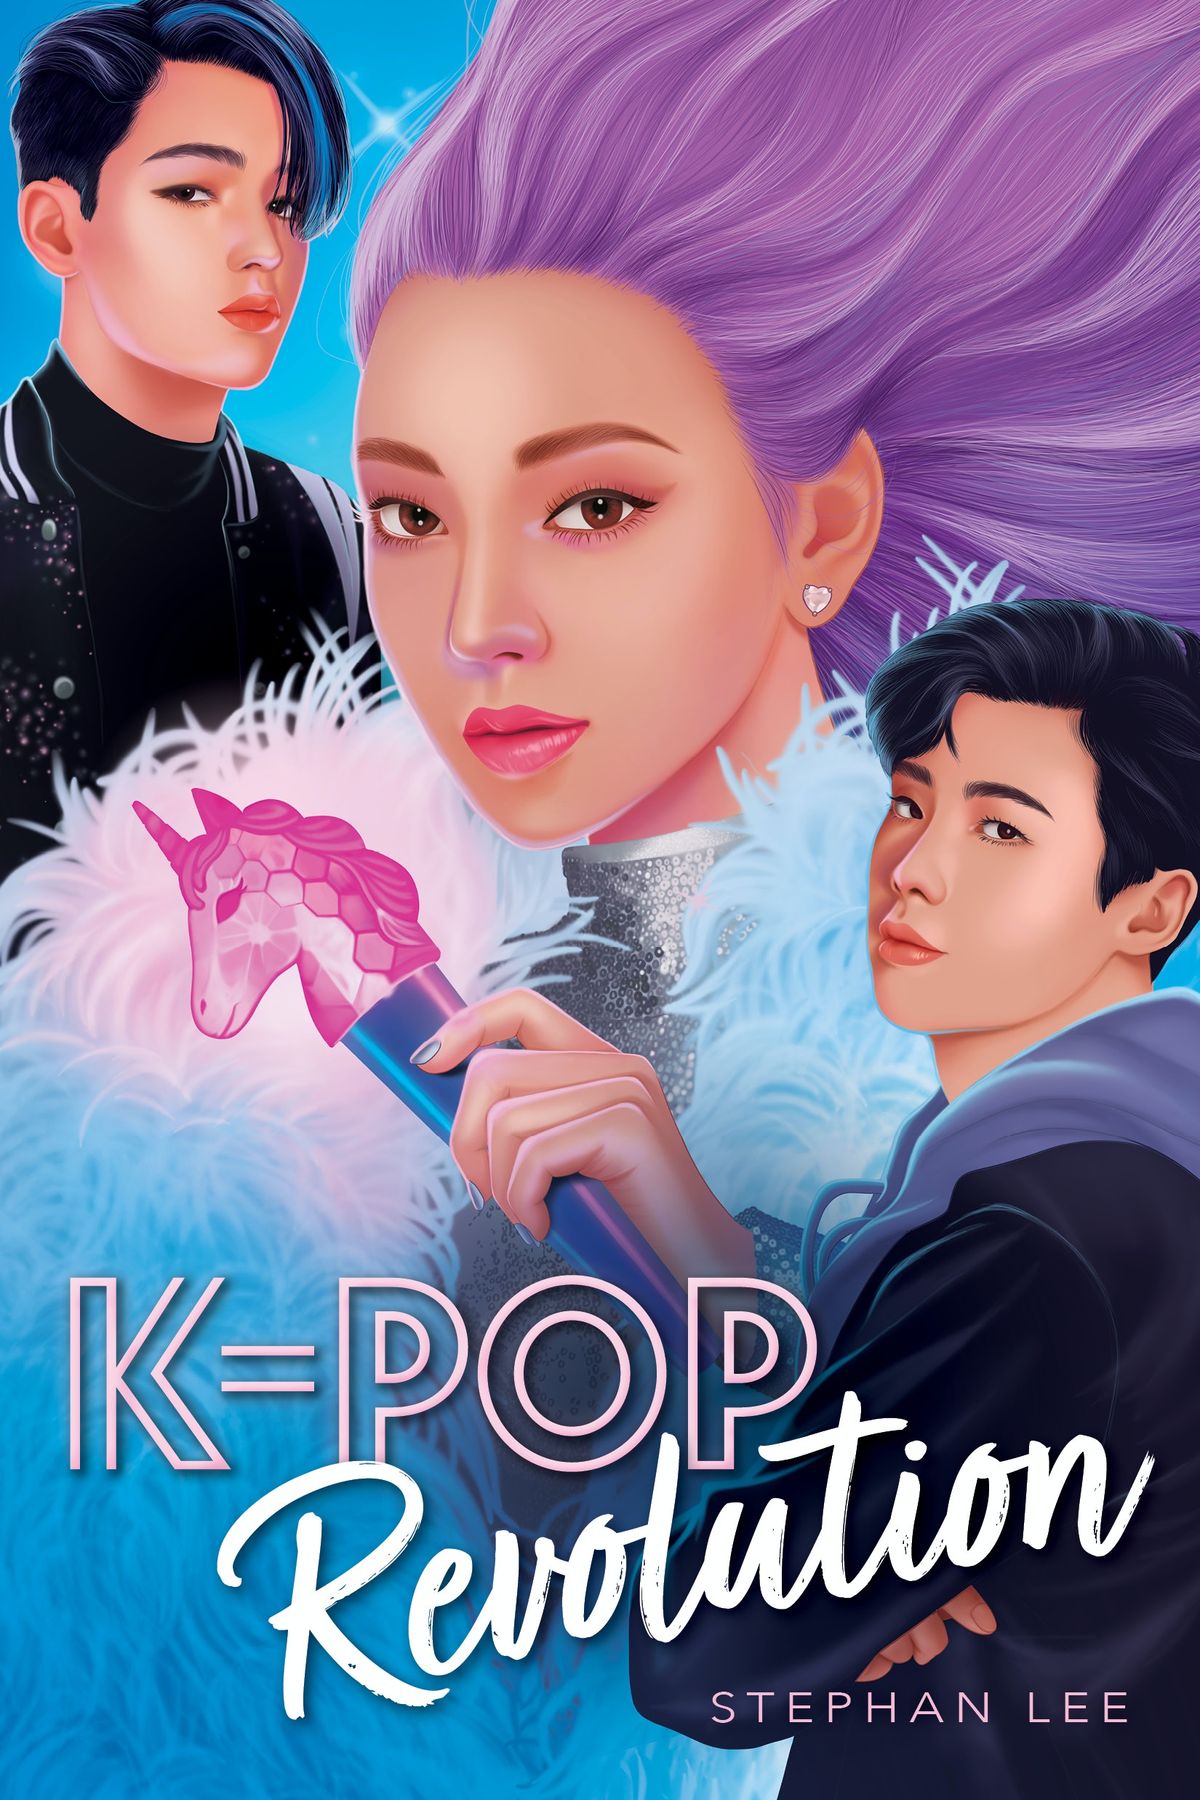 Pirmą kartą pažiūrėkite į Stephano Lee konfidencialų K-Pop tęsinį, K-Pop Revolution